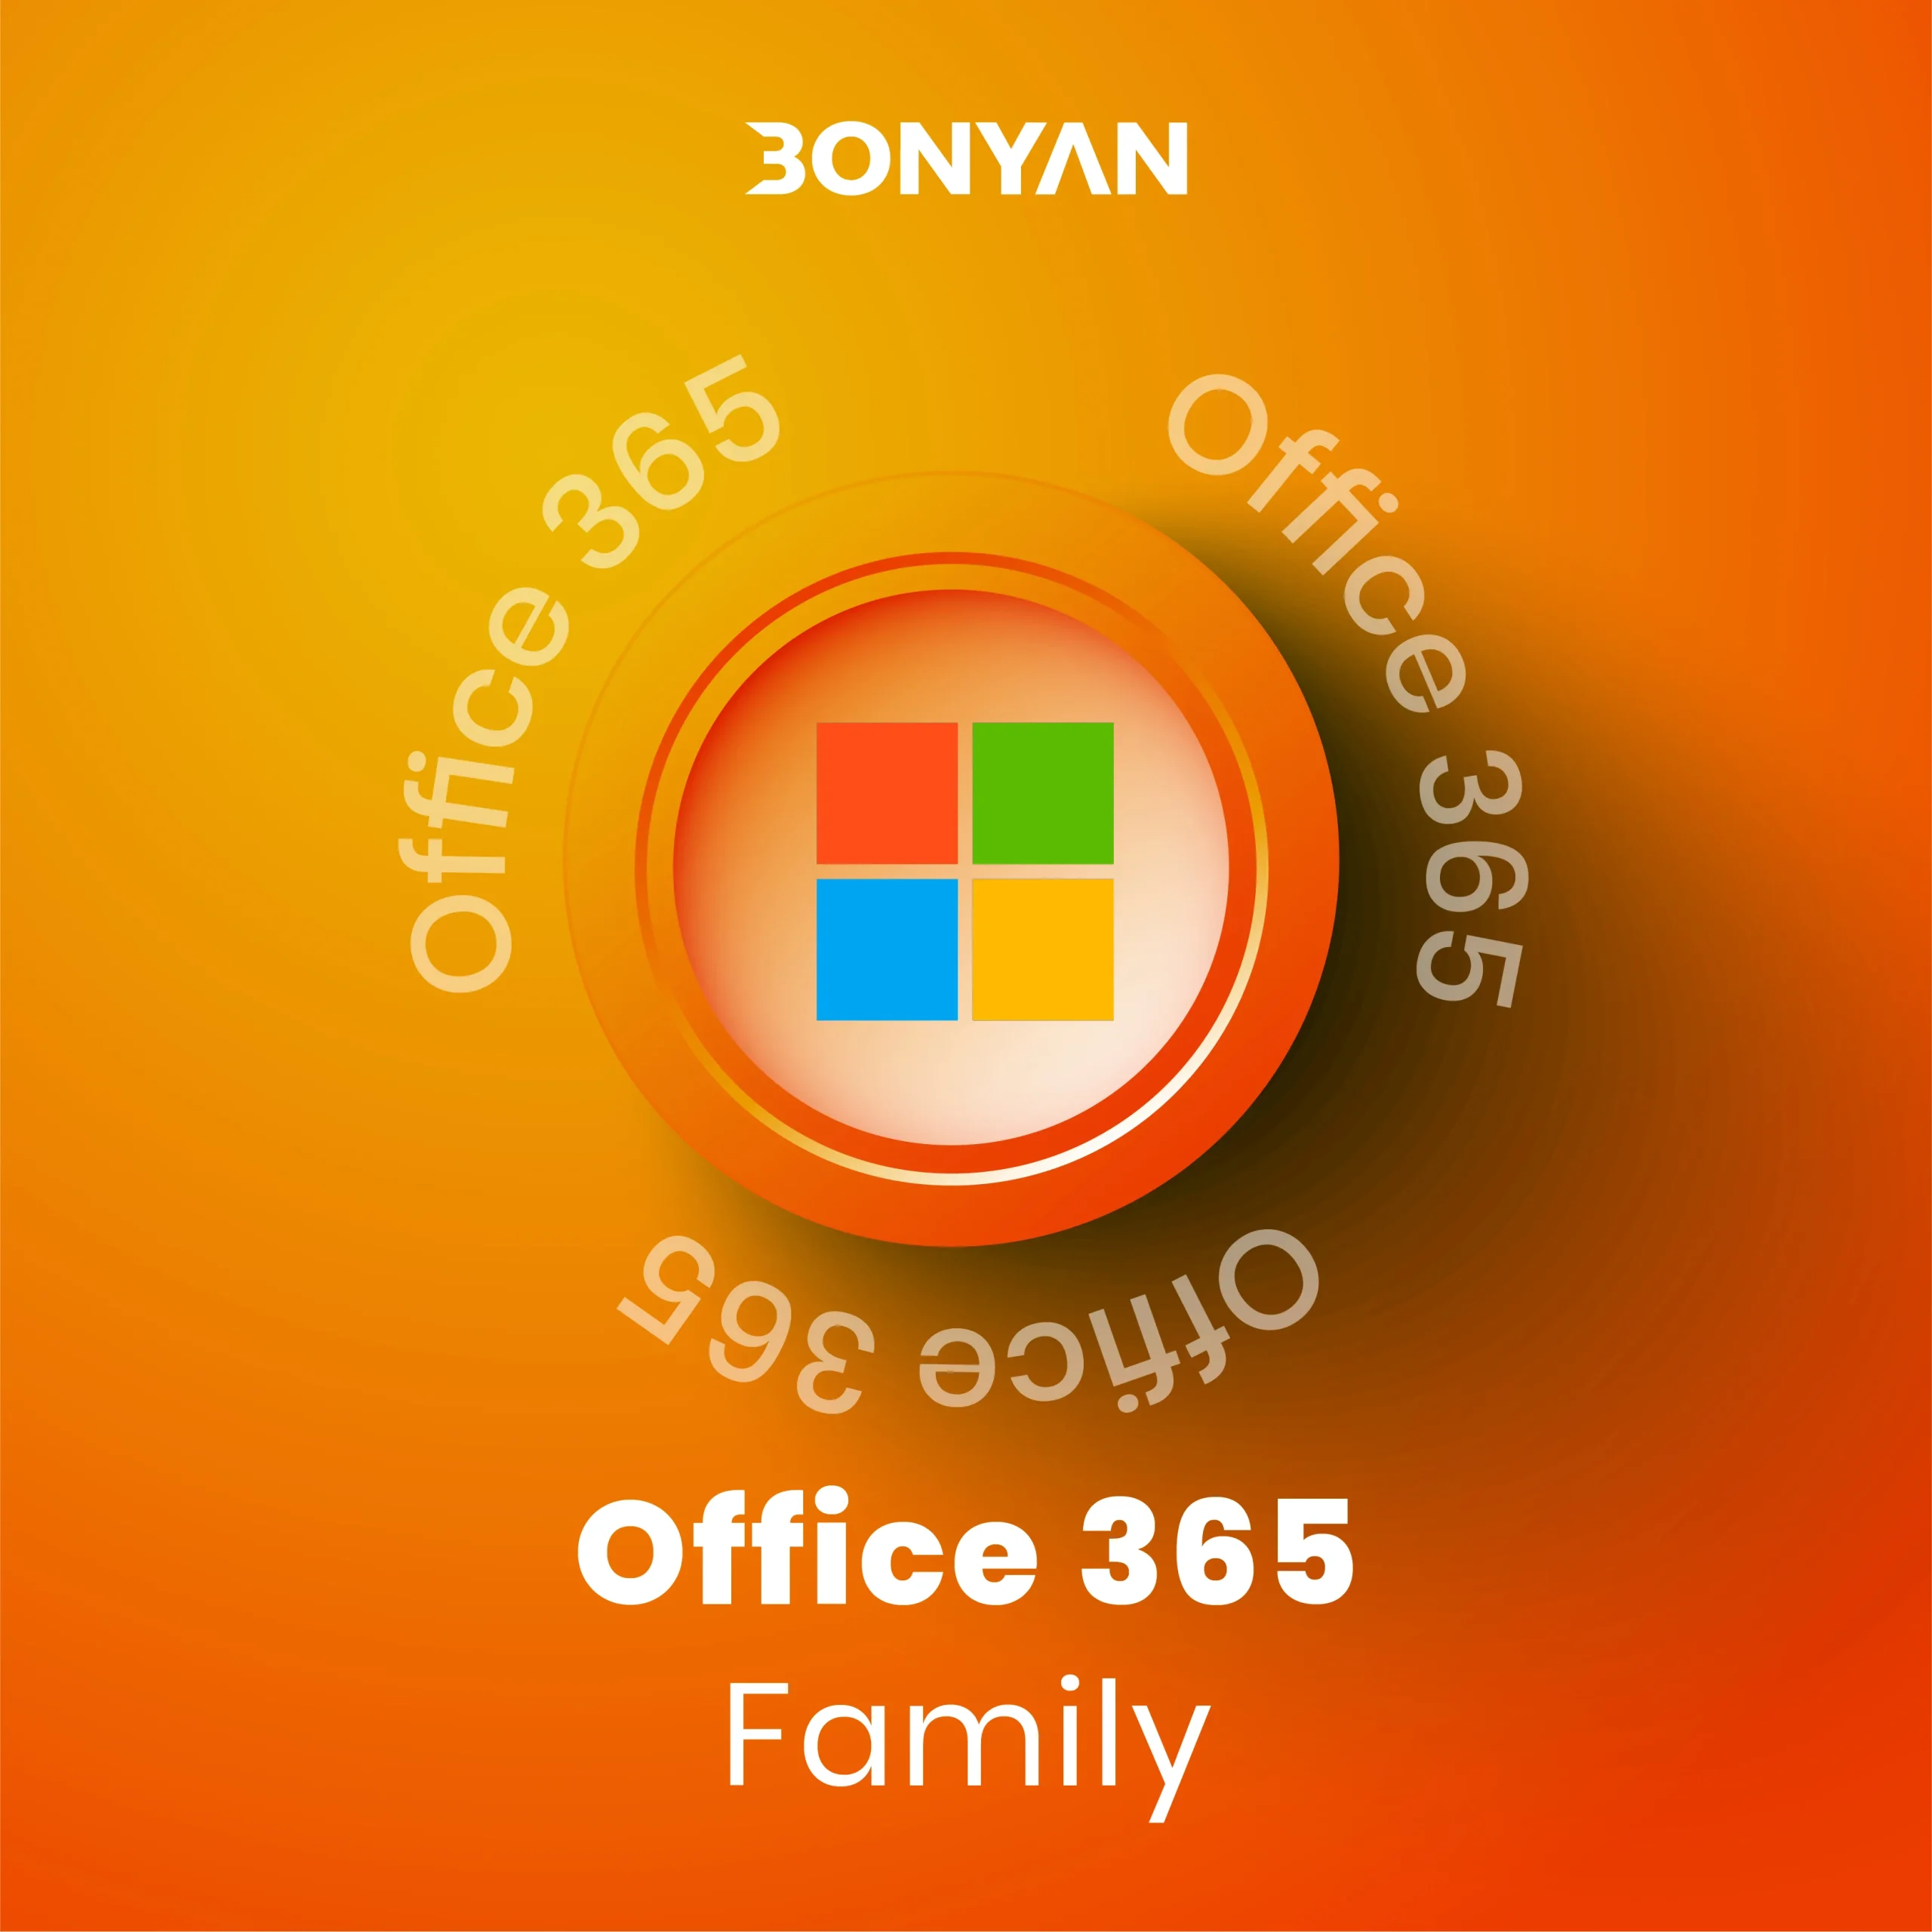 خرید office 365 family